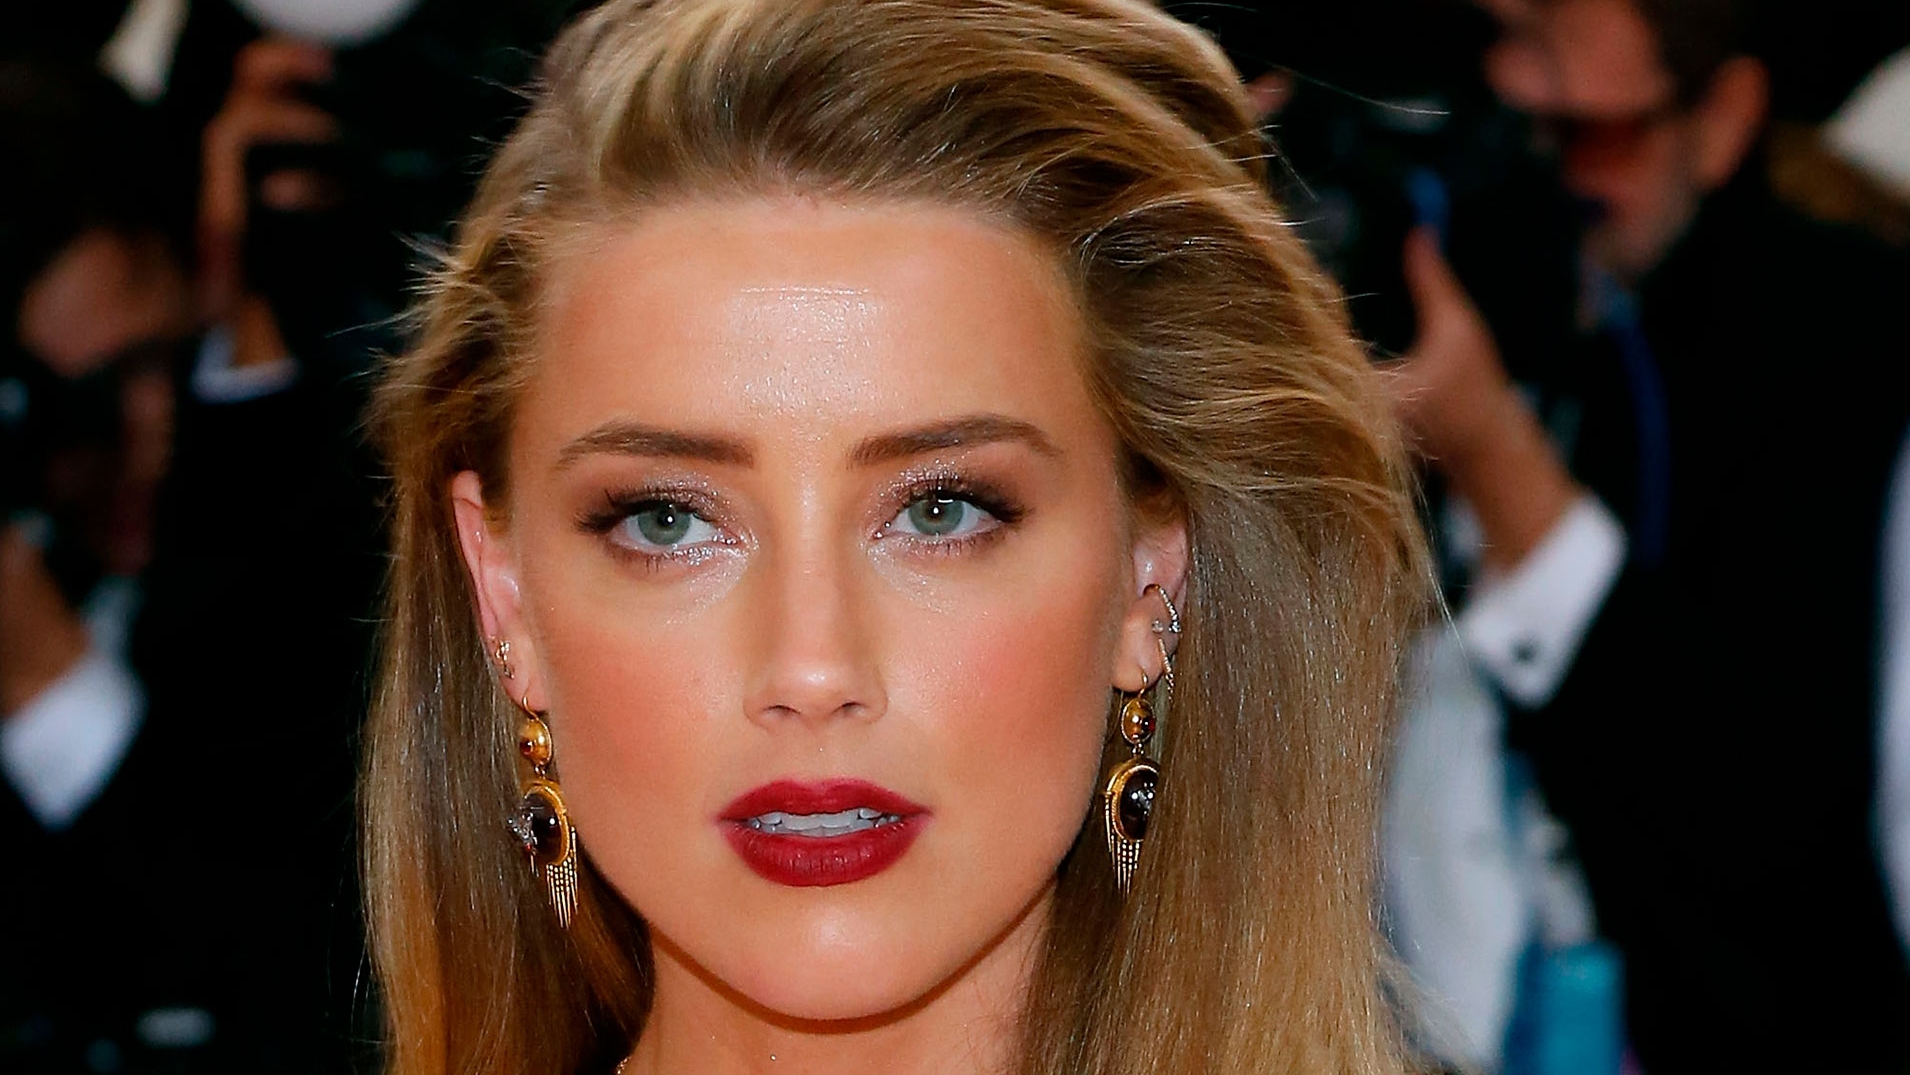 Para poder pagarle a Johnny Depp, Amber Heard recibió una oferta millonaria para realizar una película porno  